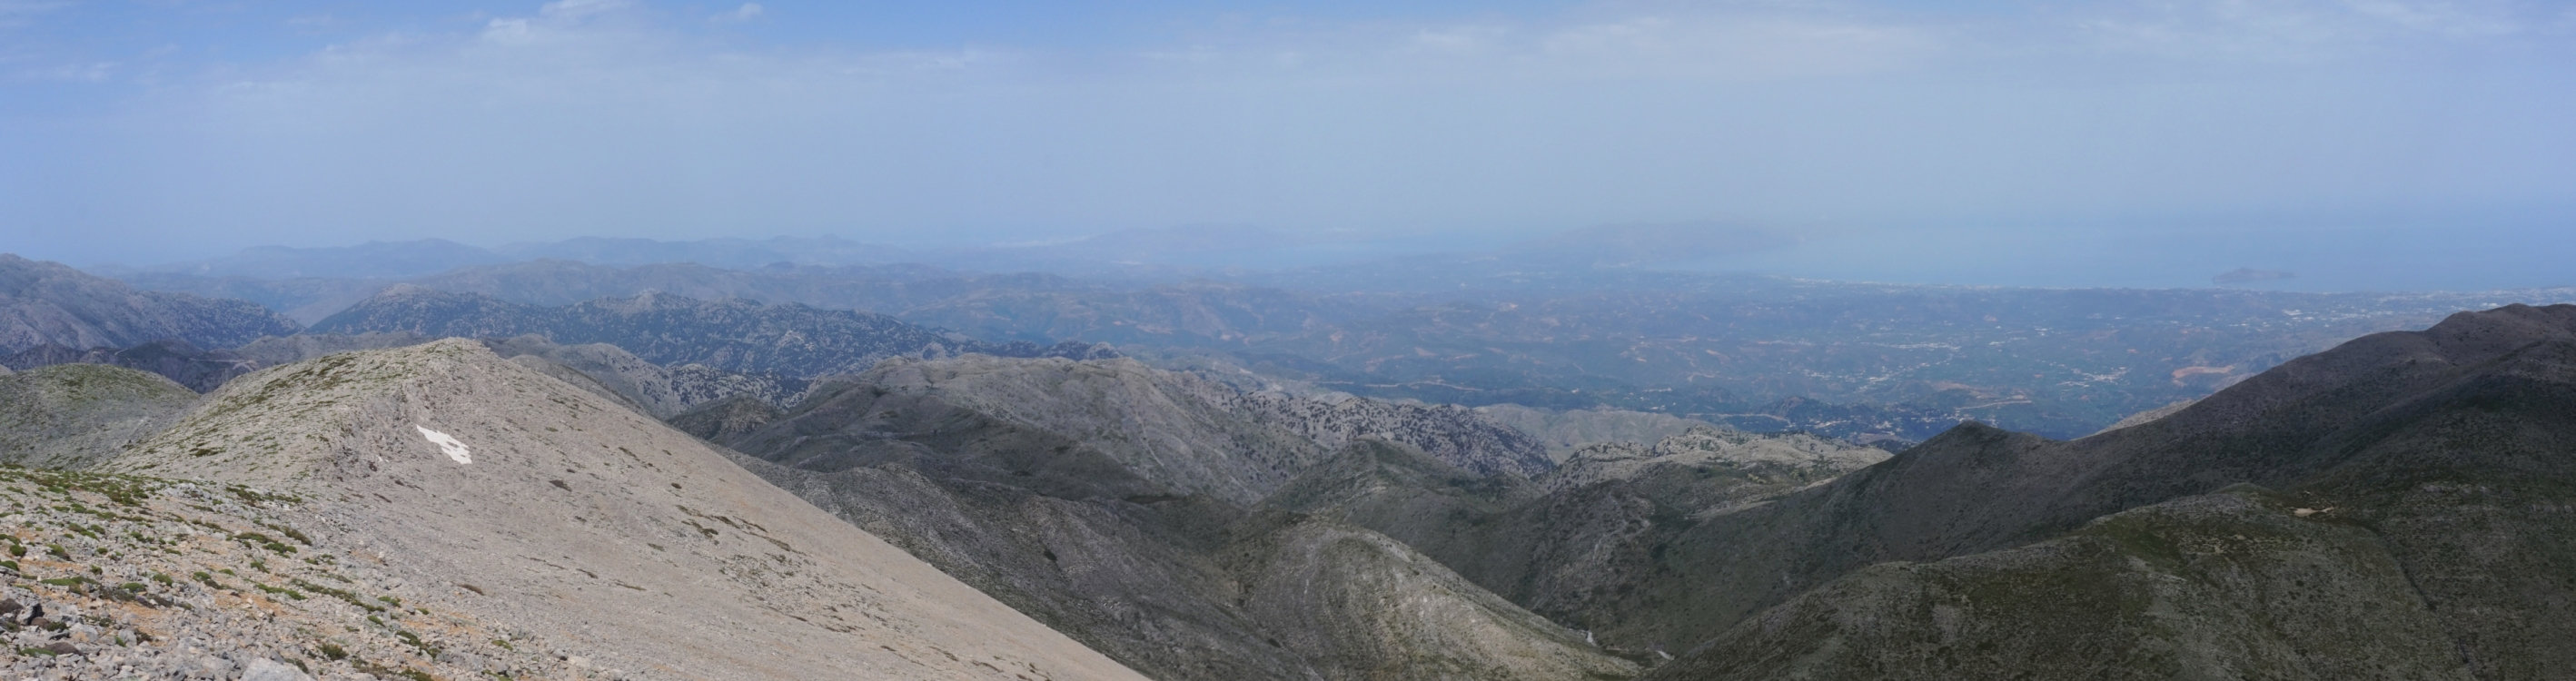 Der Blick vom Gipfel des Melindaoú über die Weißen Berge.